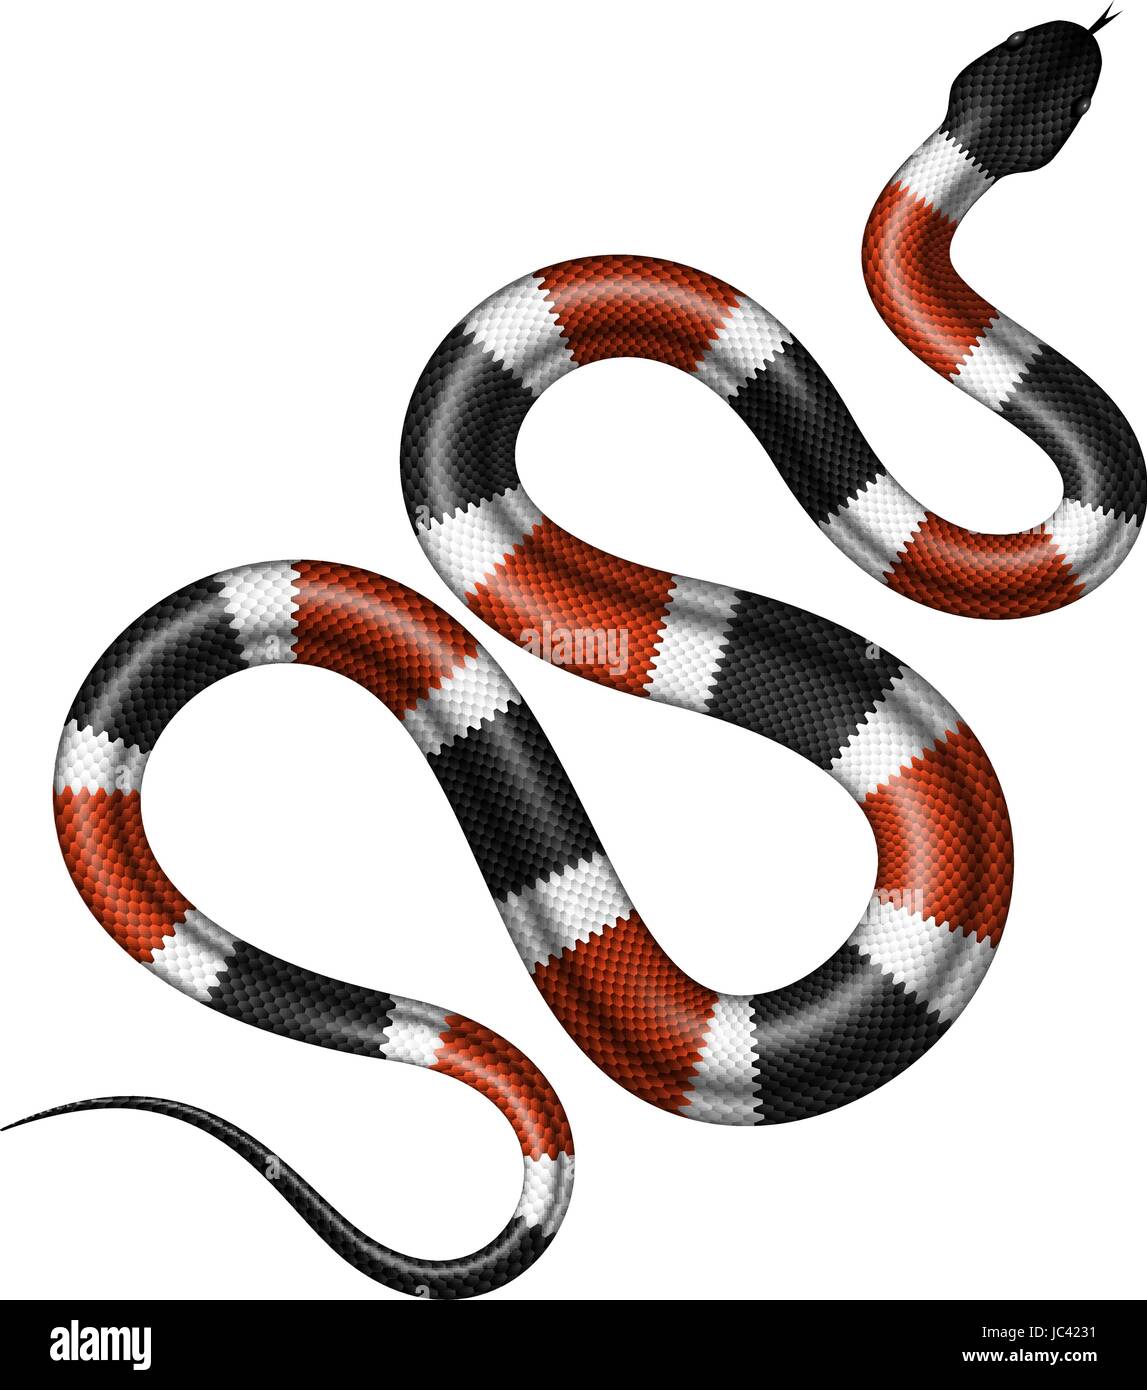 Coral snake illustrazione vettoriale. Isolato serpente tropicale su sfondo bianco. Illustrazione Vettoriale